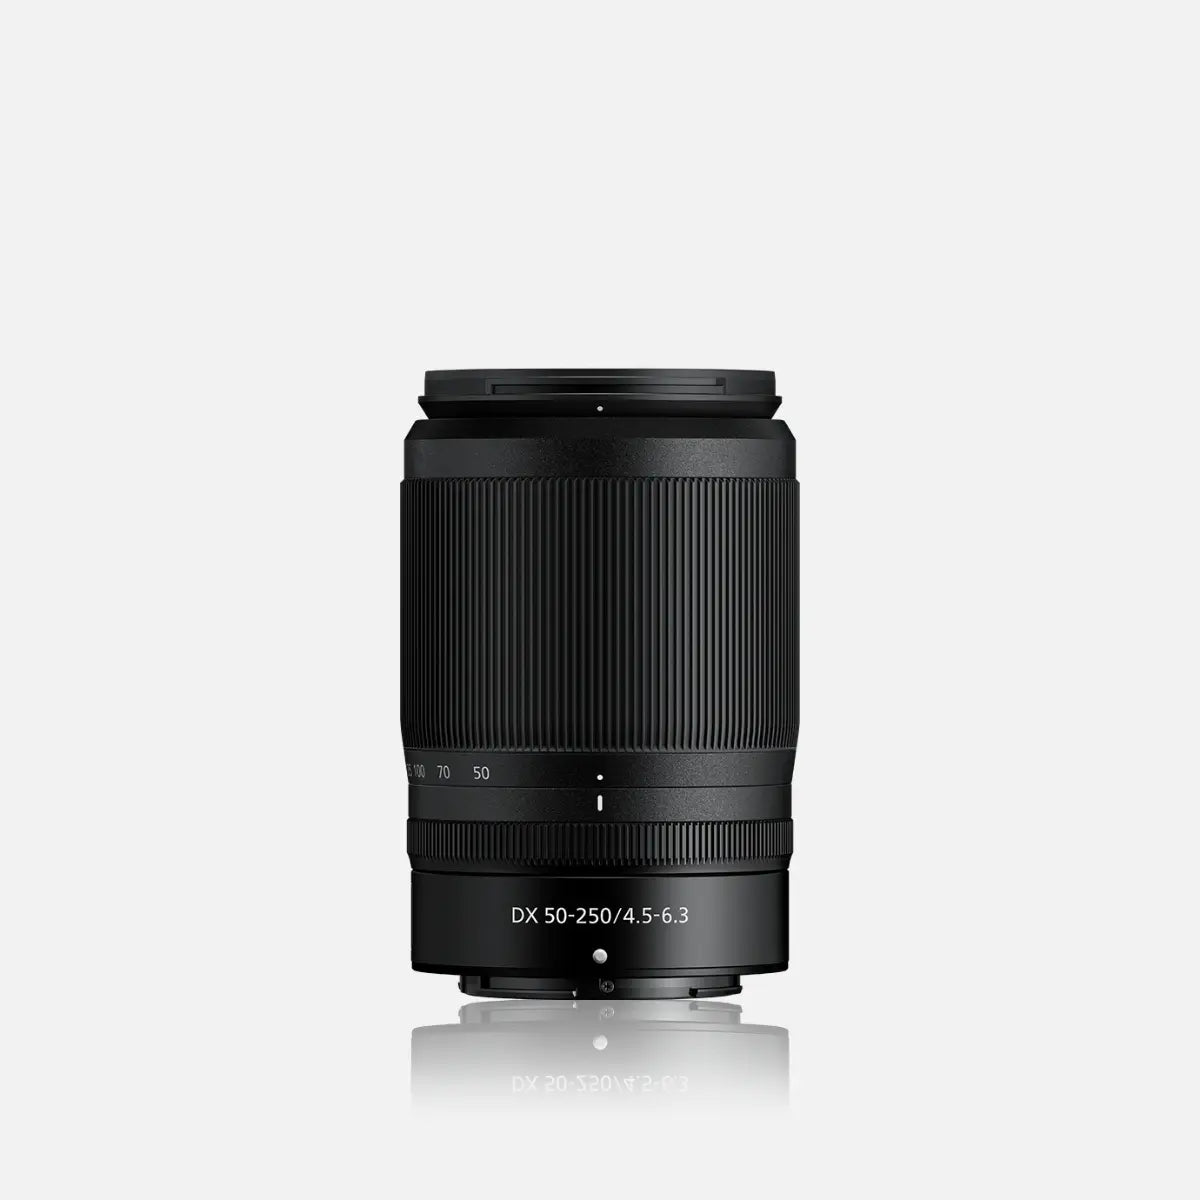 ニコン NIKKOR Z DX 50-250mm f 4.5-6.3 VR 望遠ズームレンズ Nikon